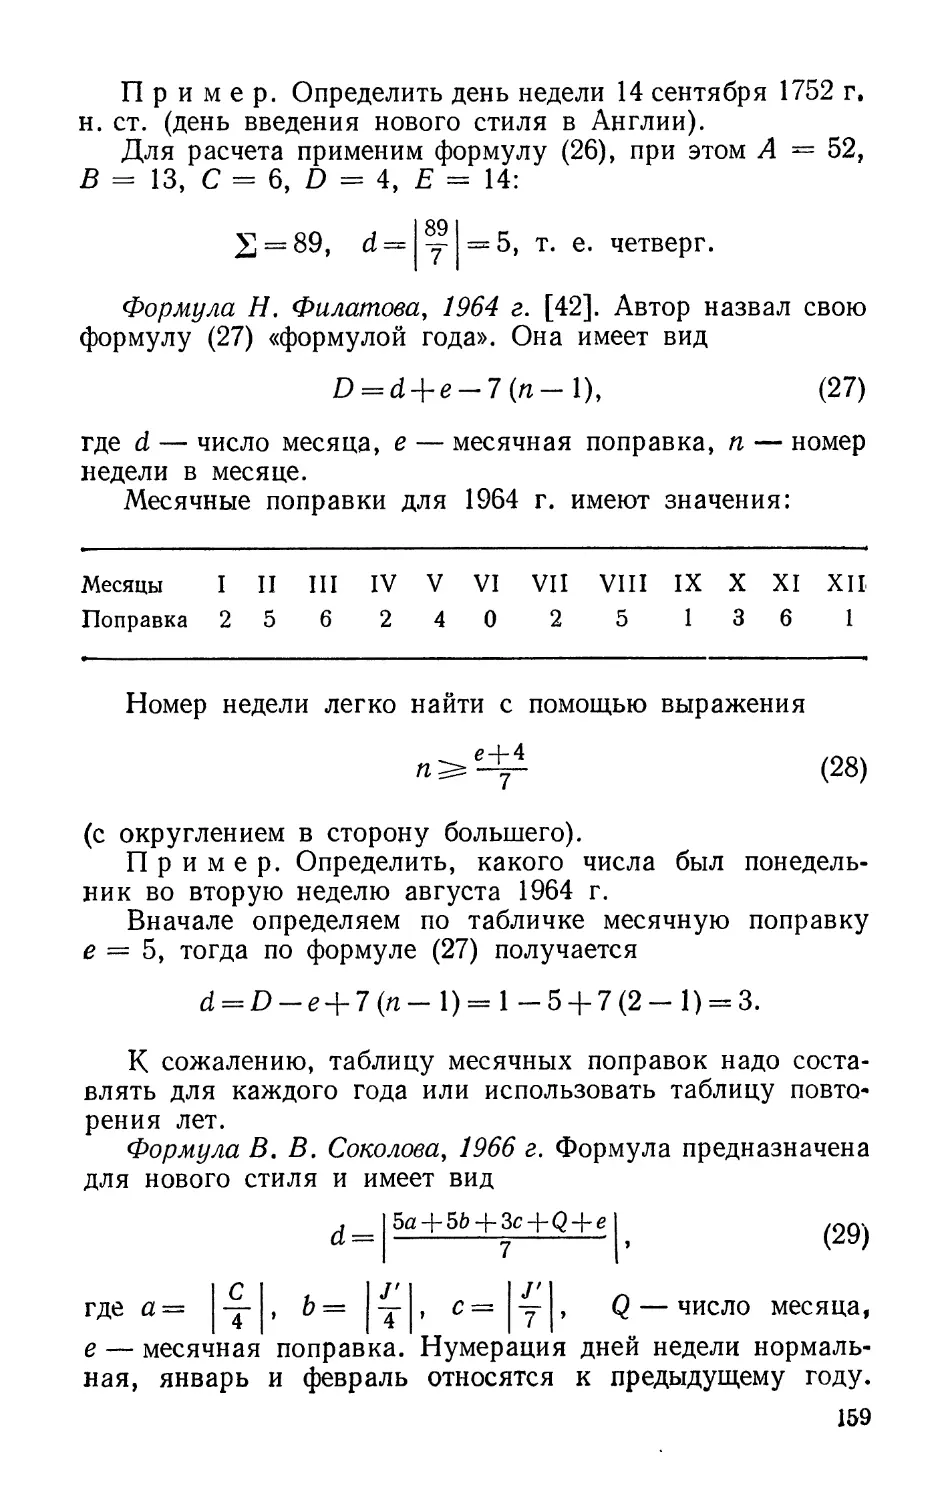 Формула Н. Филатова, 1964 г.
Формула В. В. Соколова, 1966 г.